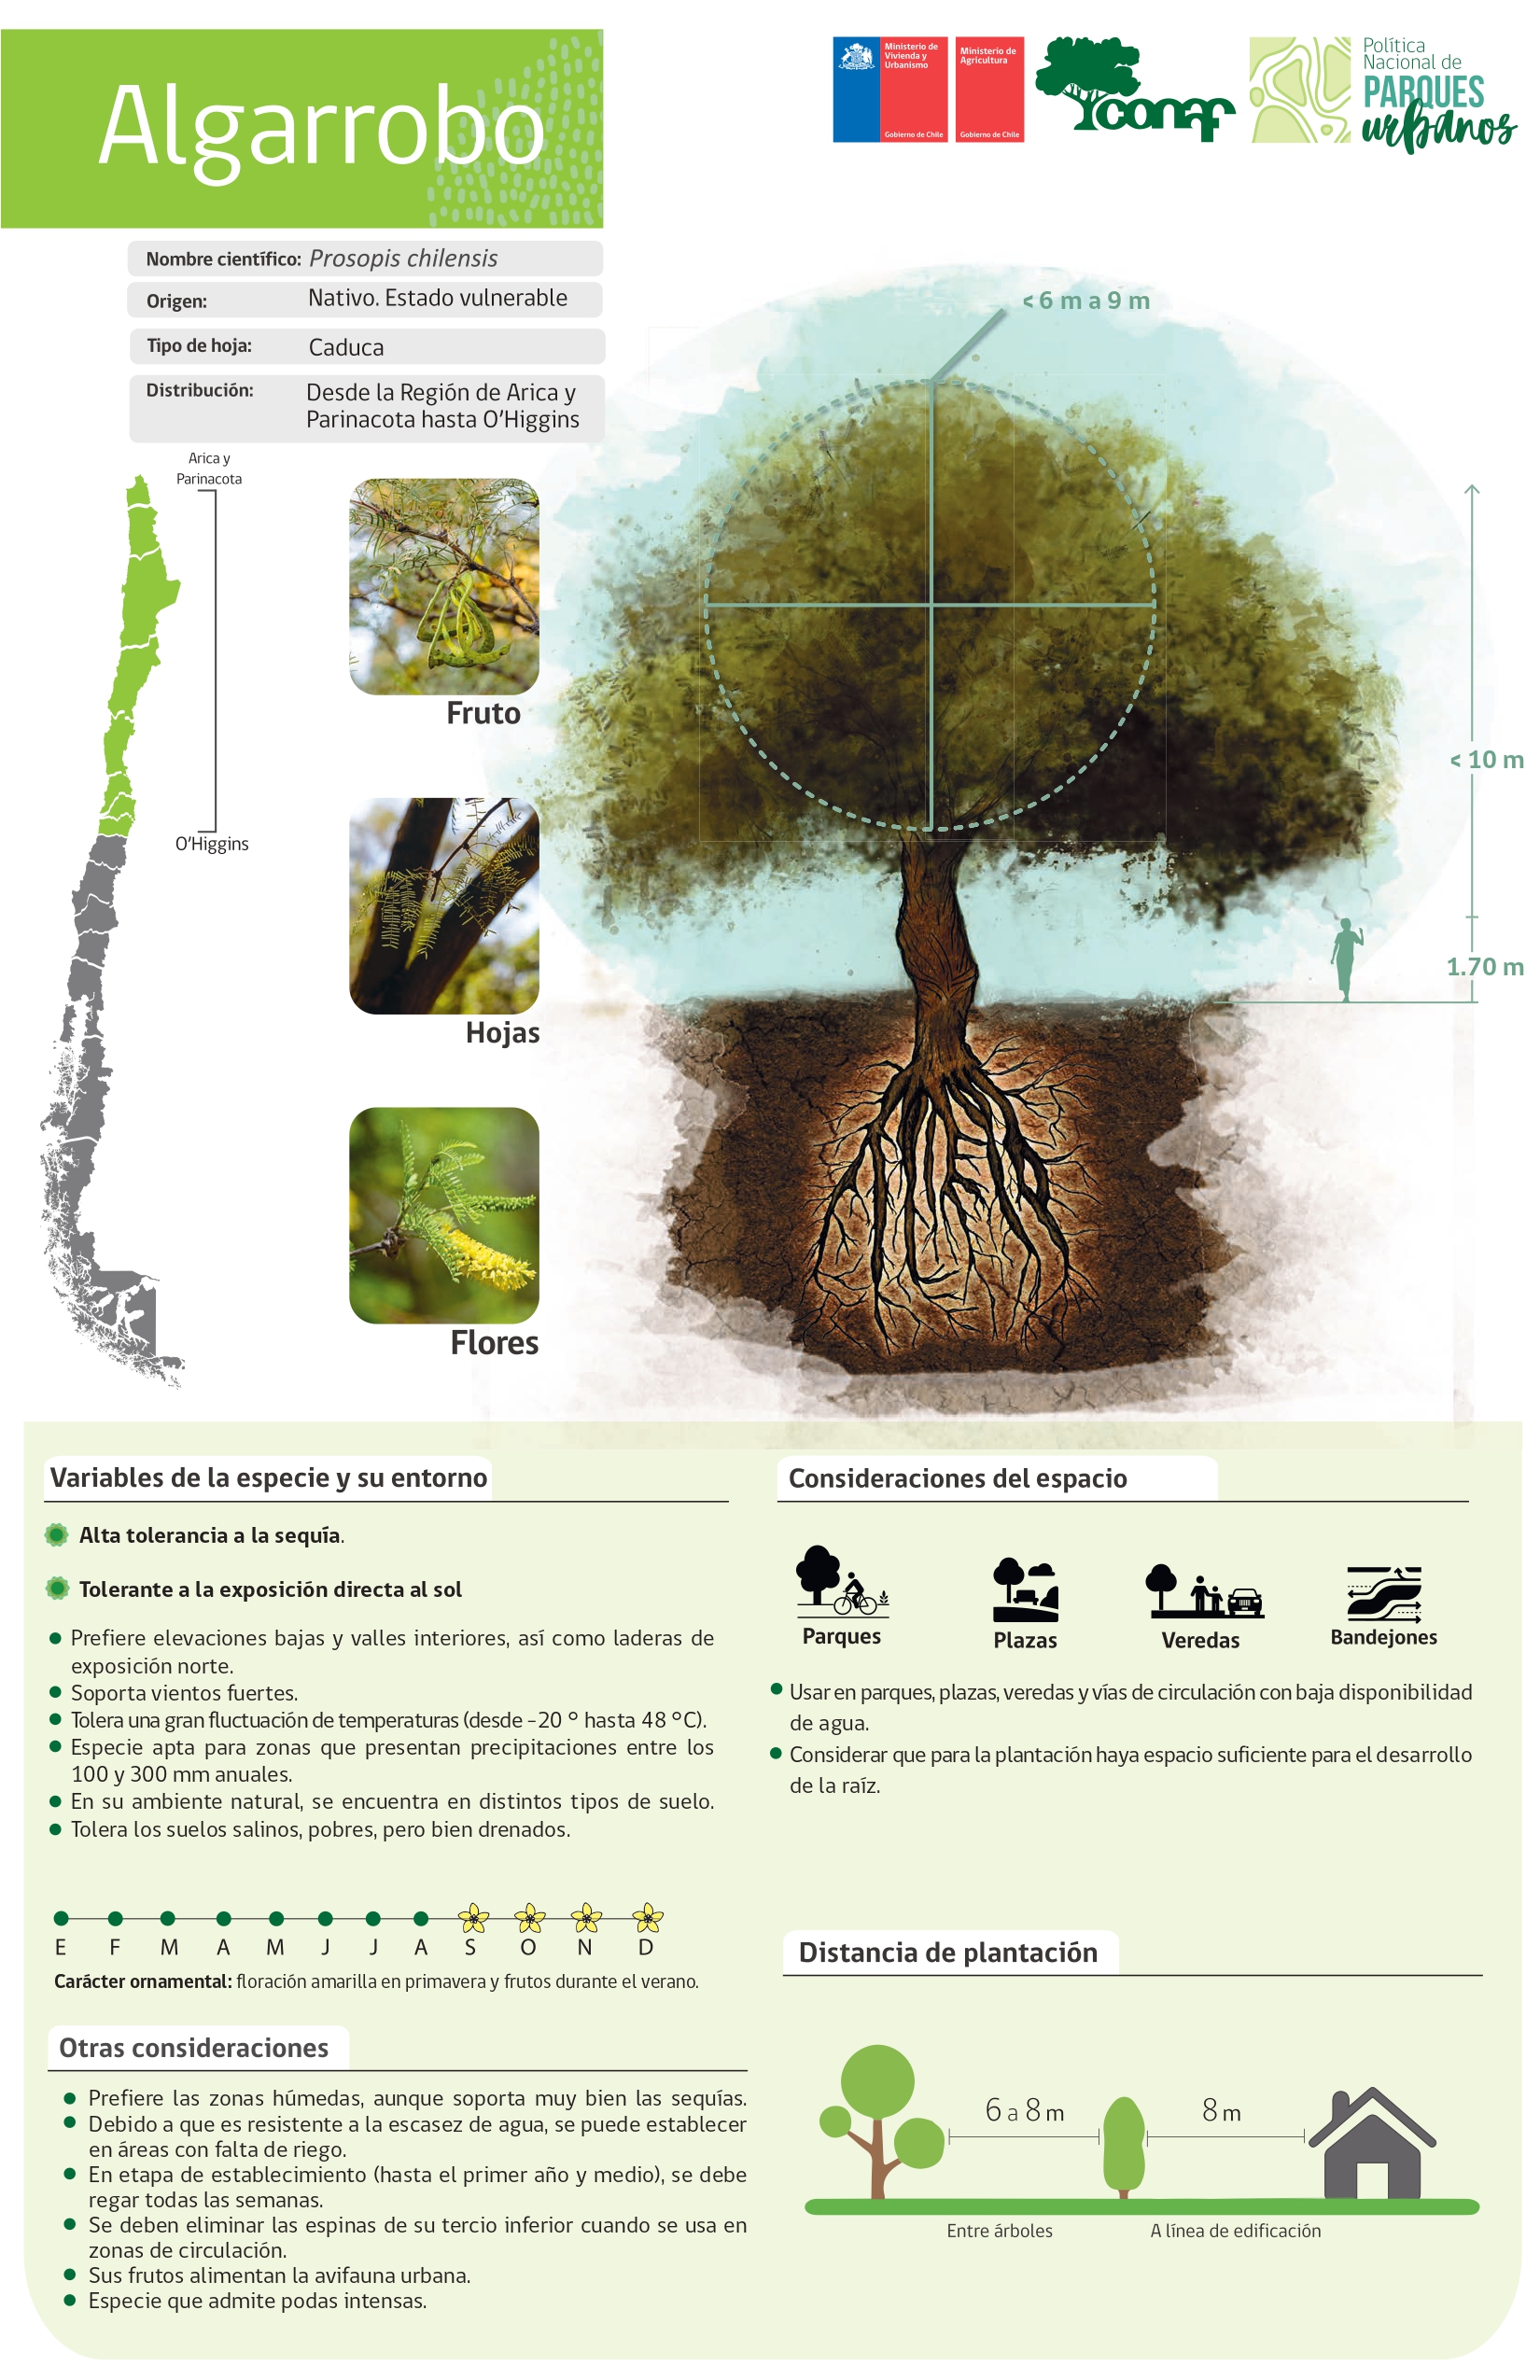 Conoce qué árboles plantar y en qué zonas en medio de la sequía hídrica que  enfrenta Chile | Emol.com